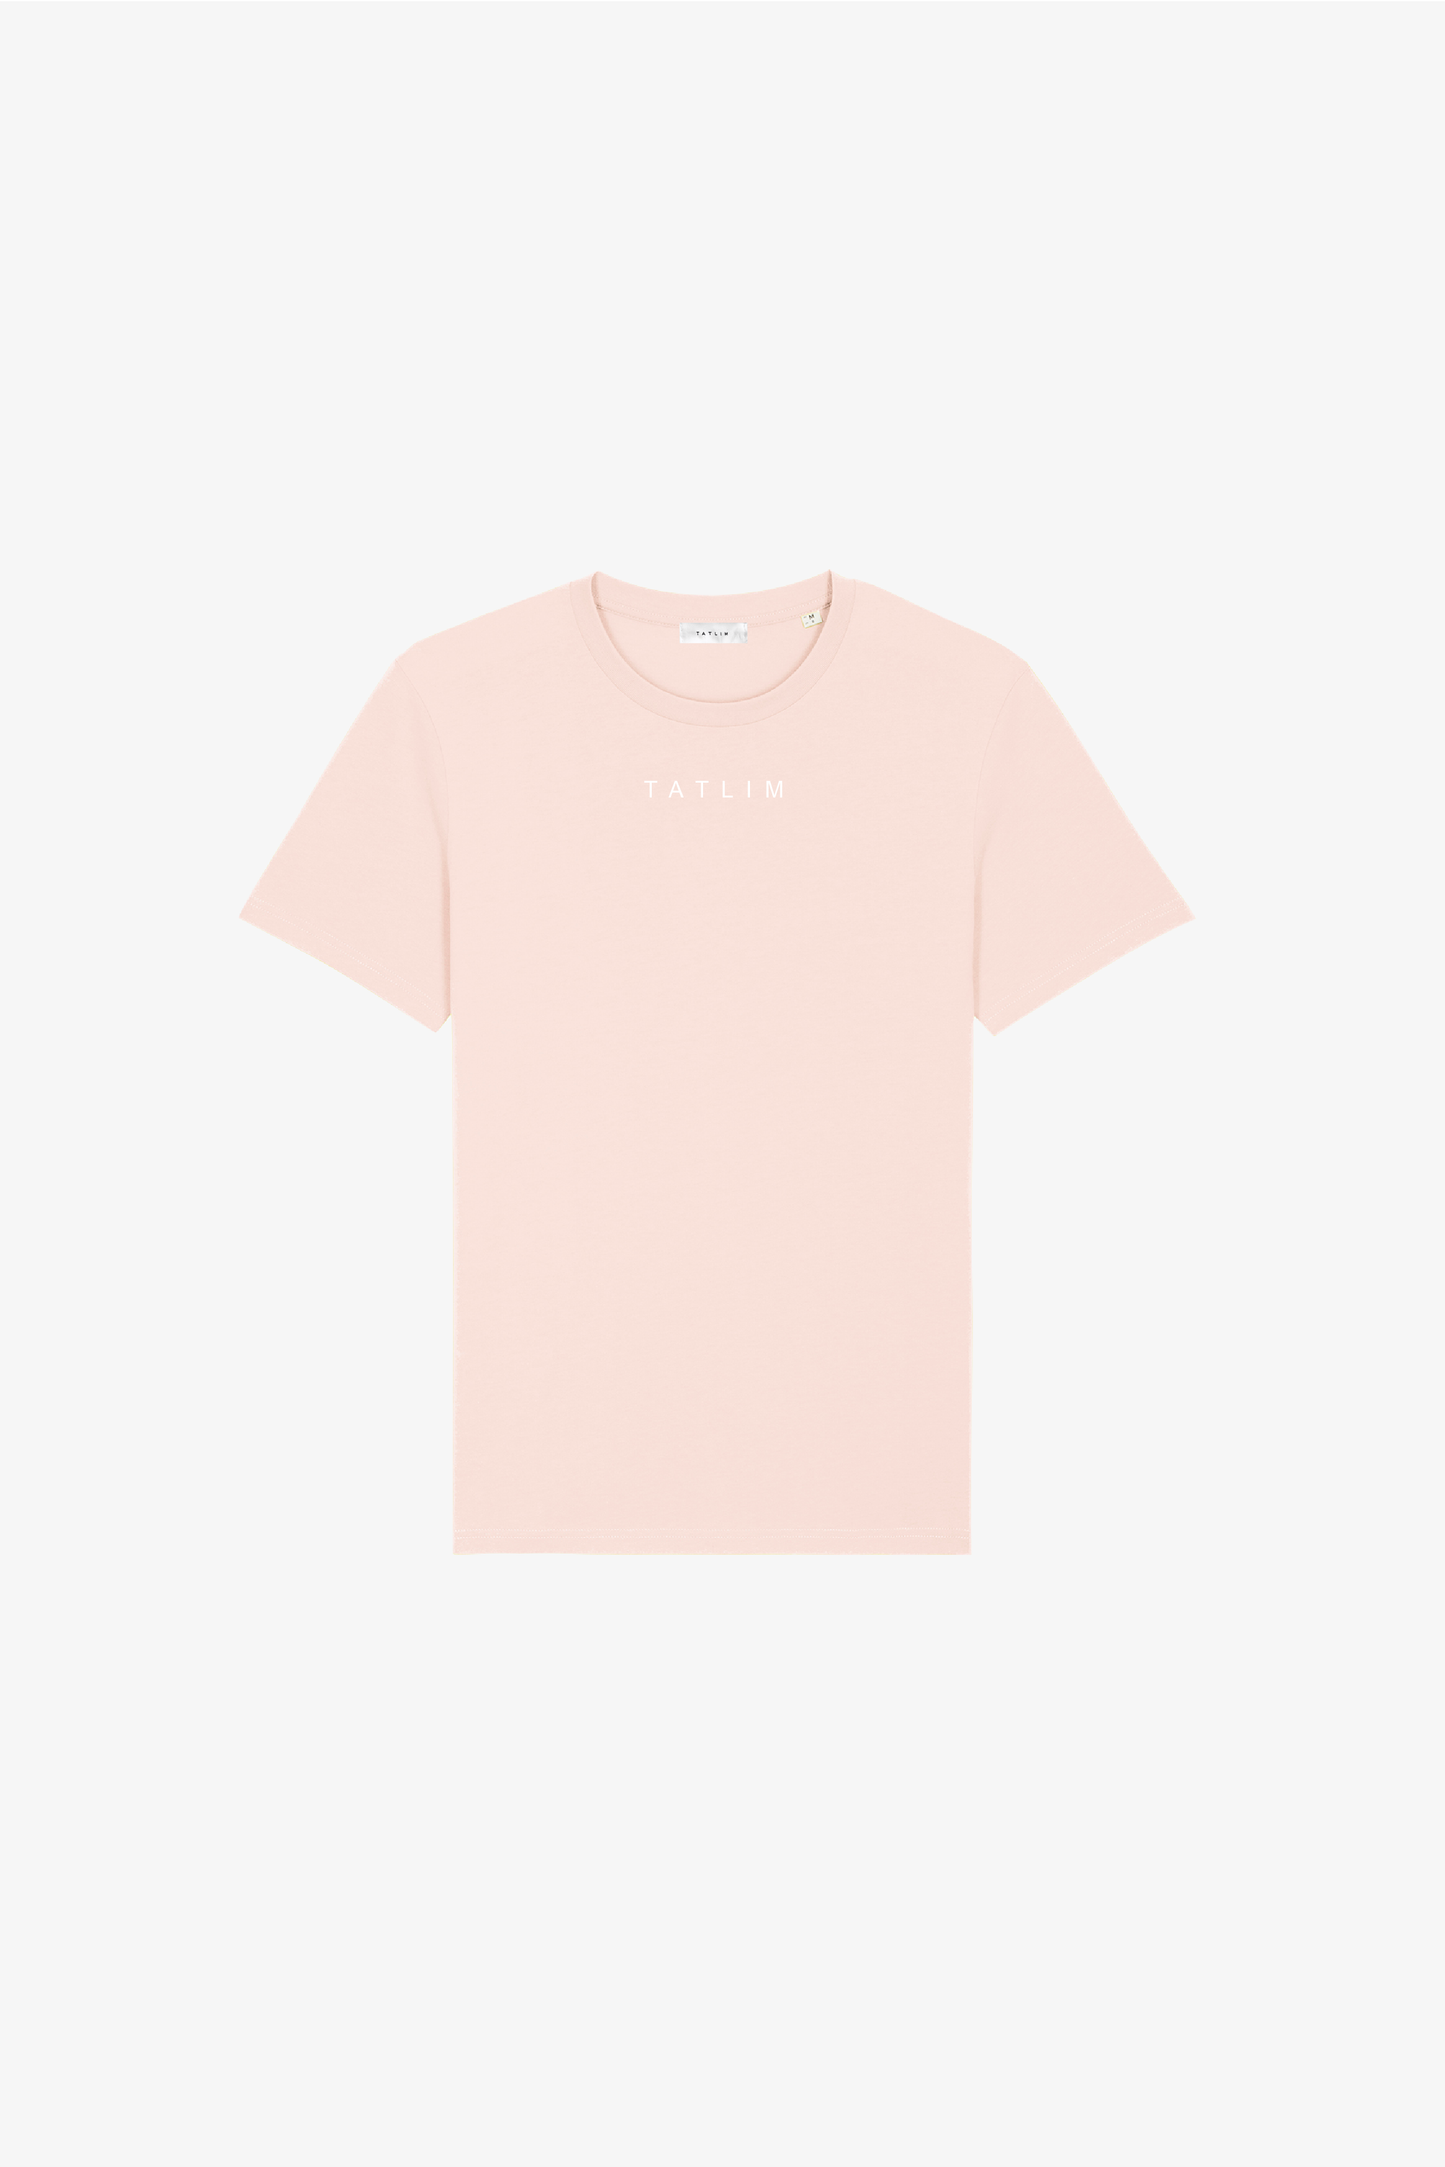 Faded Pink Tatlim Essentials T Shirt